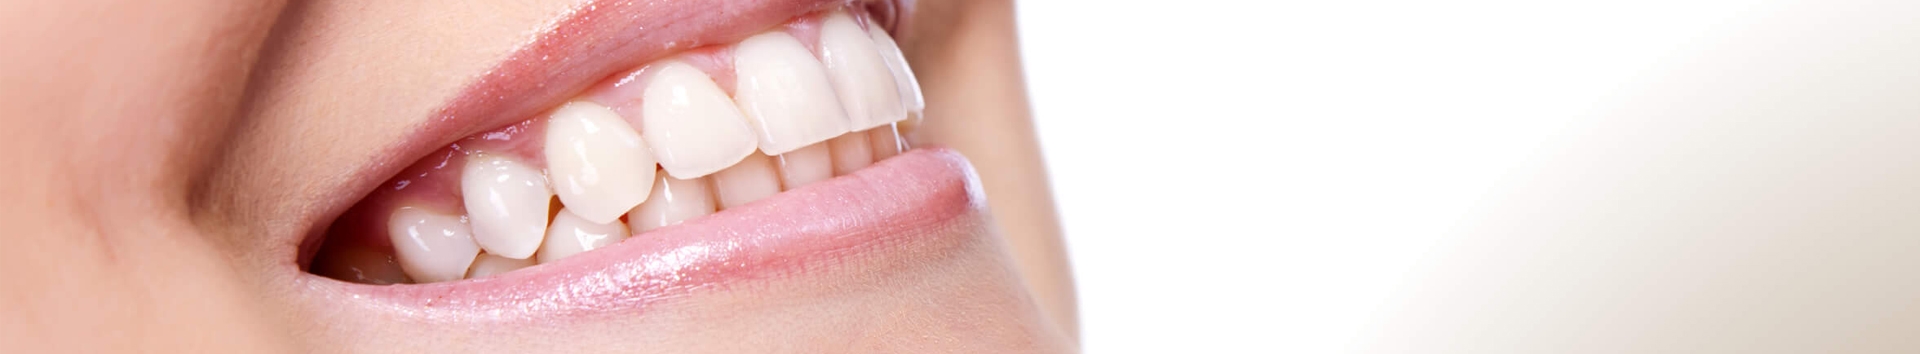 Lentes de Contato Dental: As vantagens de fazer na Dual Clinic